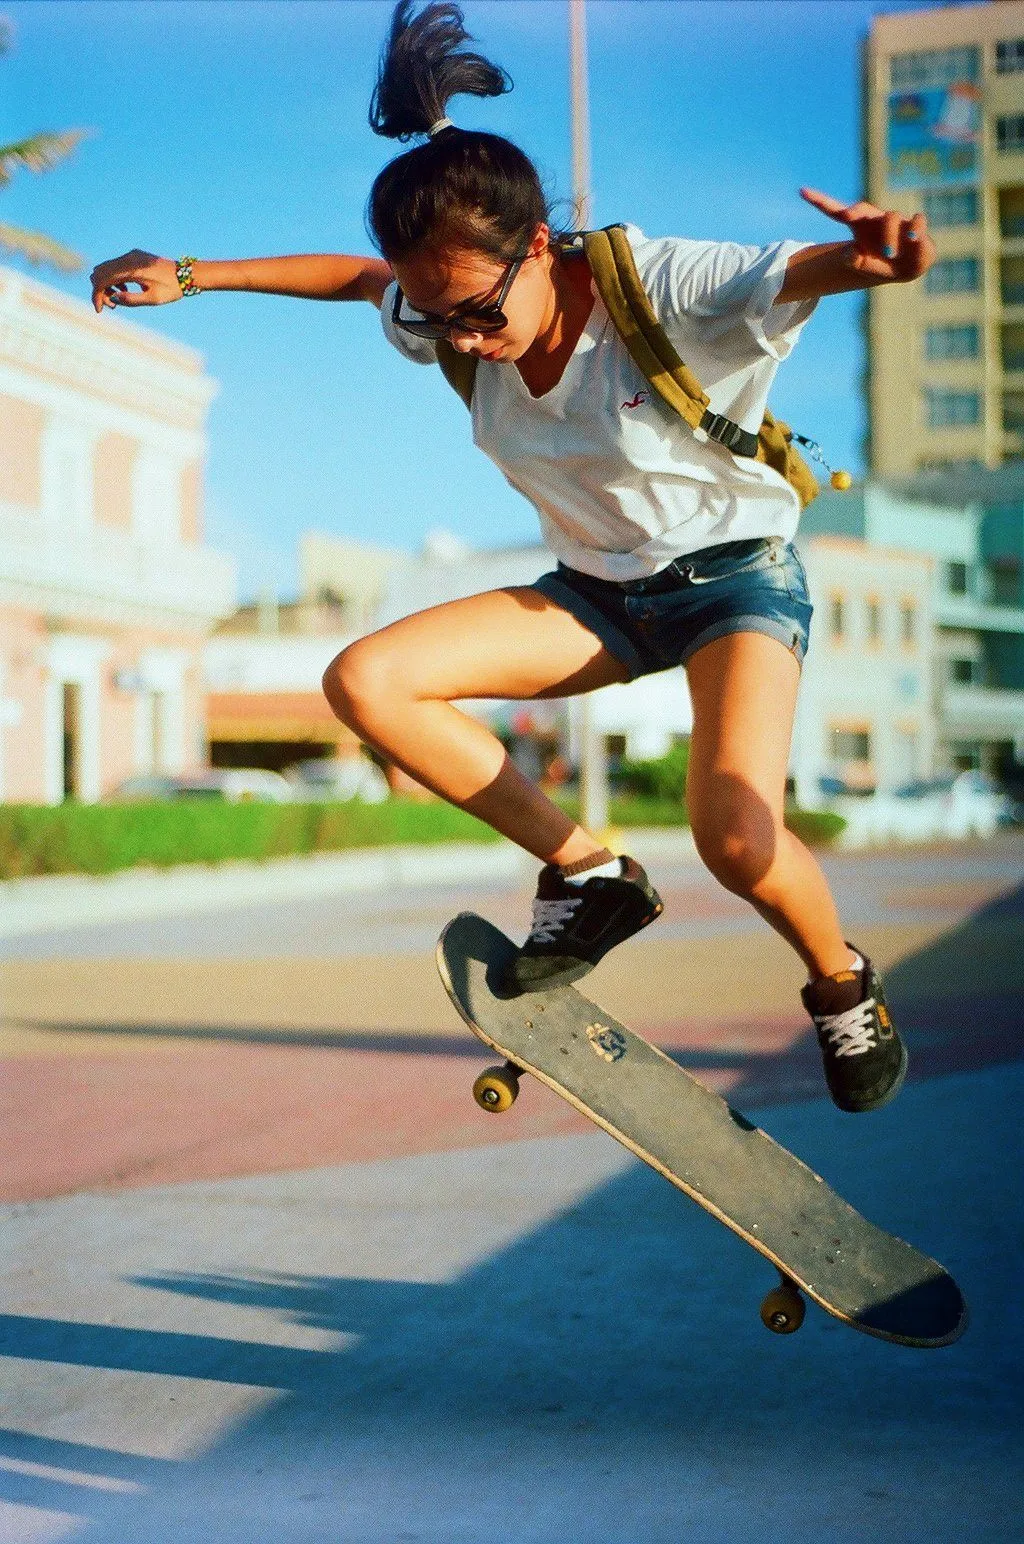 Skate Girl by juanNeve on DeviantArt